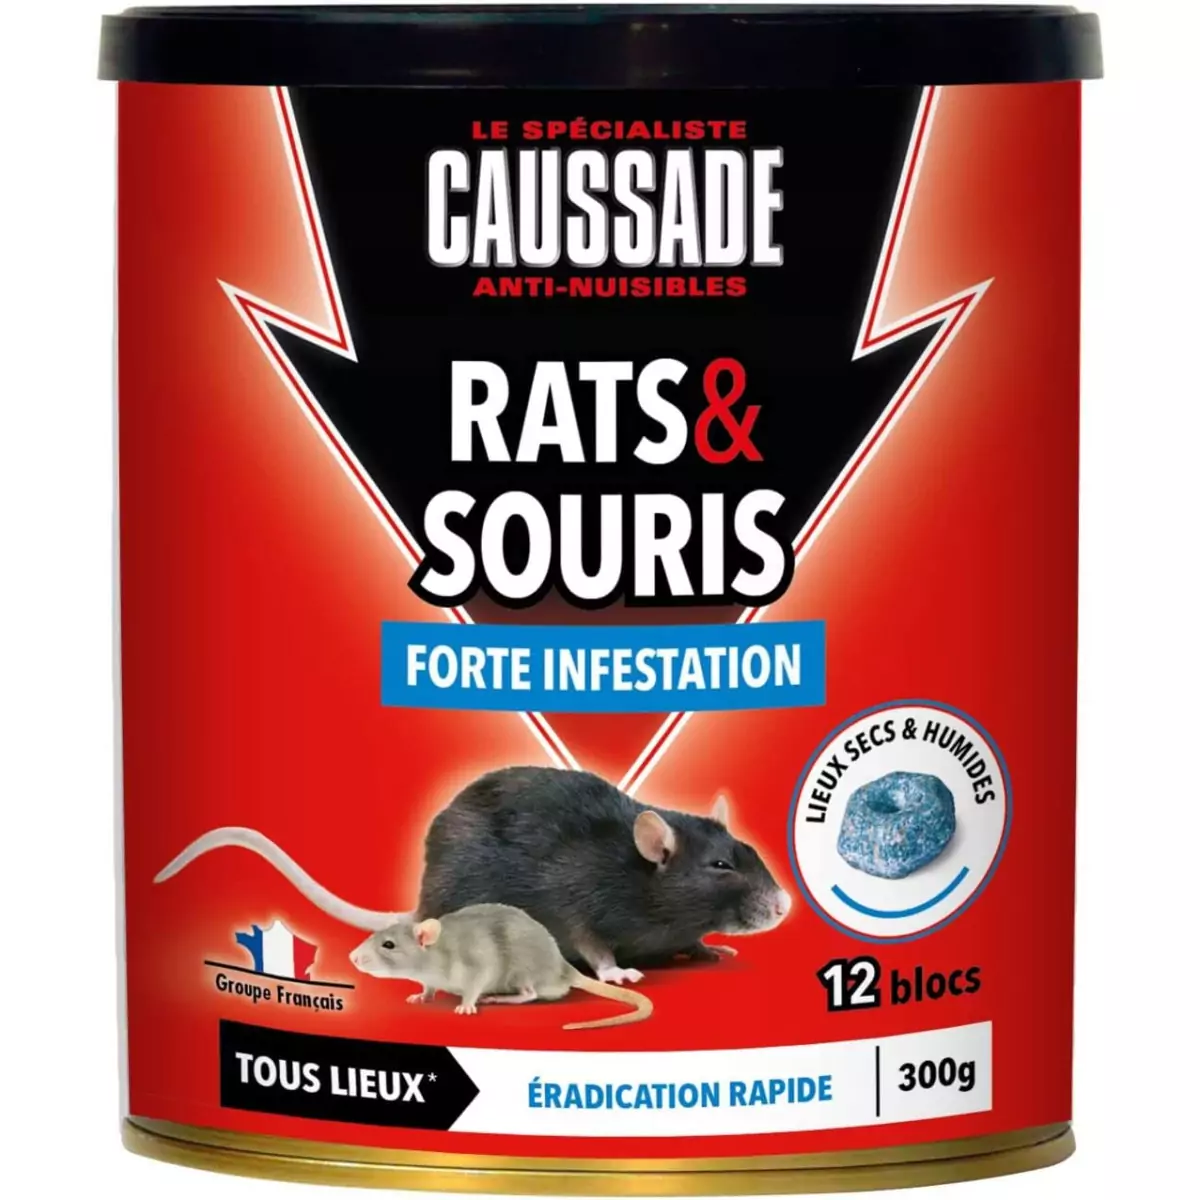 Tapettes à rat et souris à compression efficaces contre les nuisibles